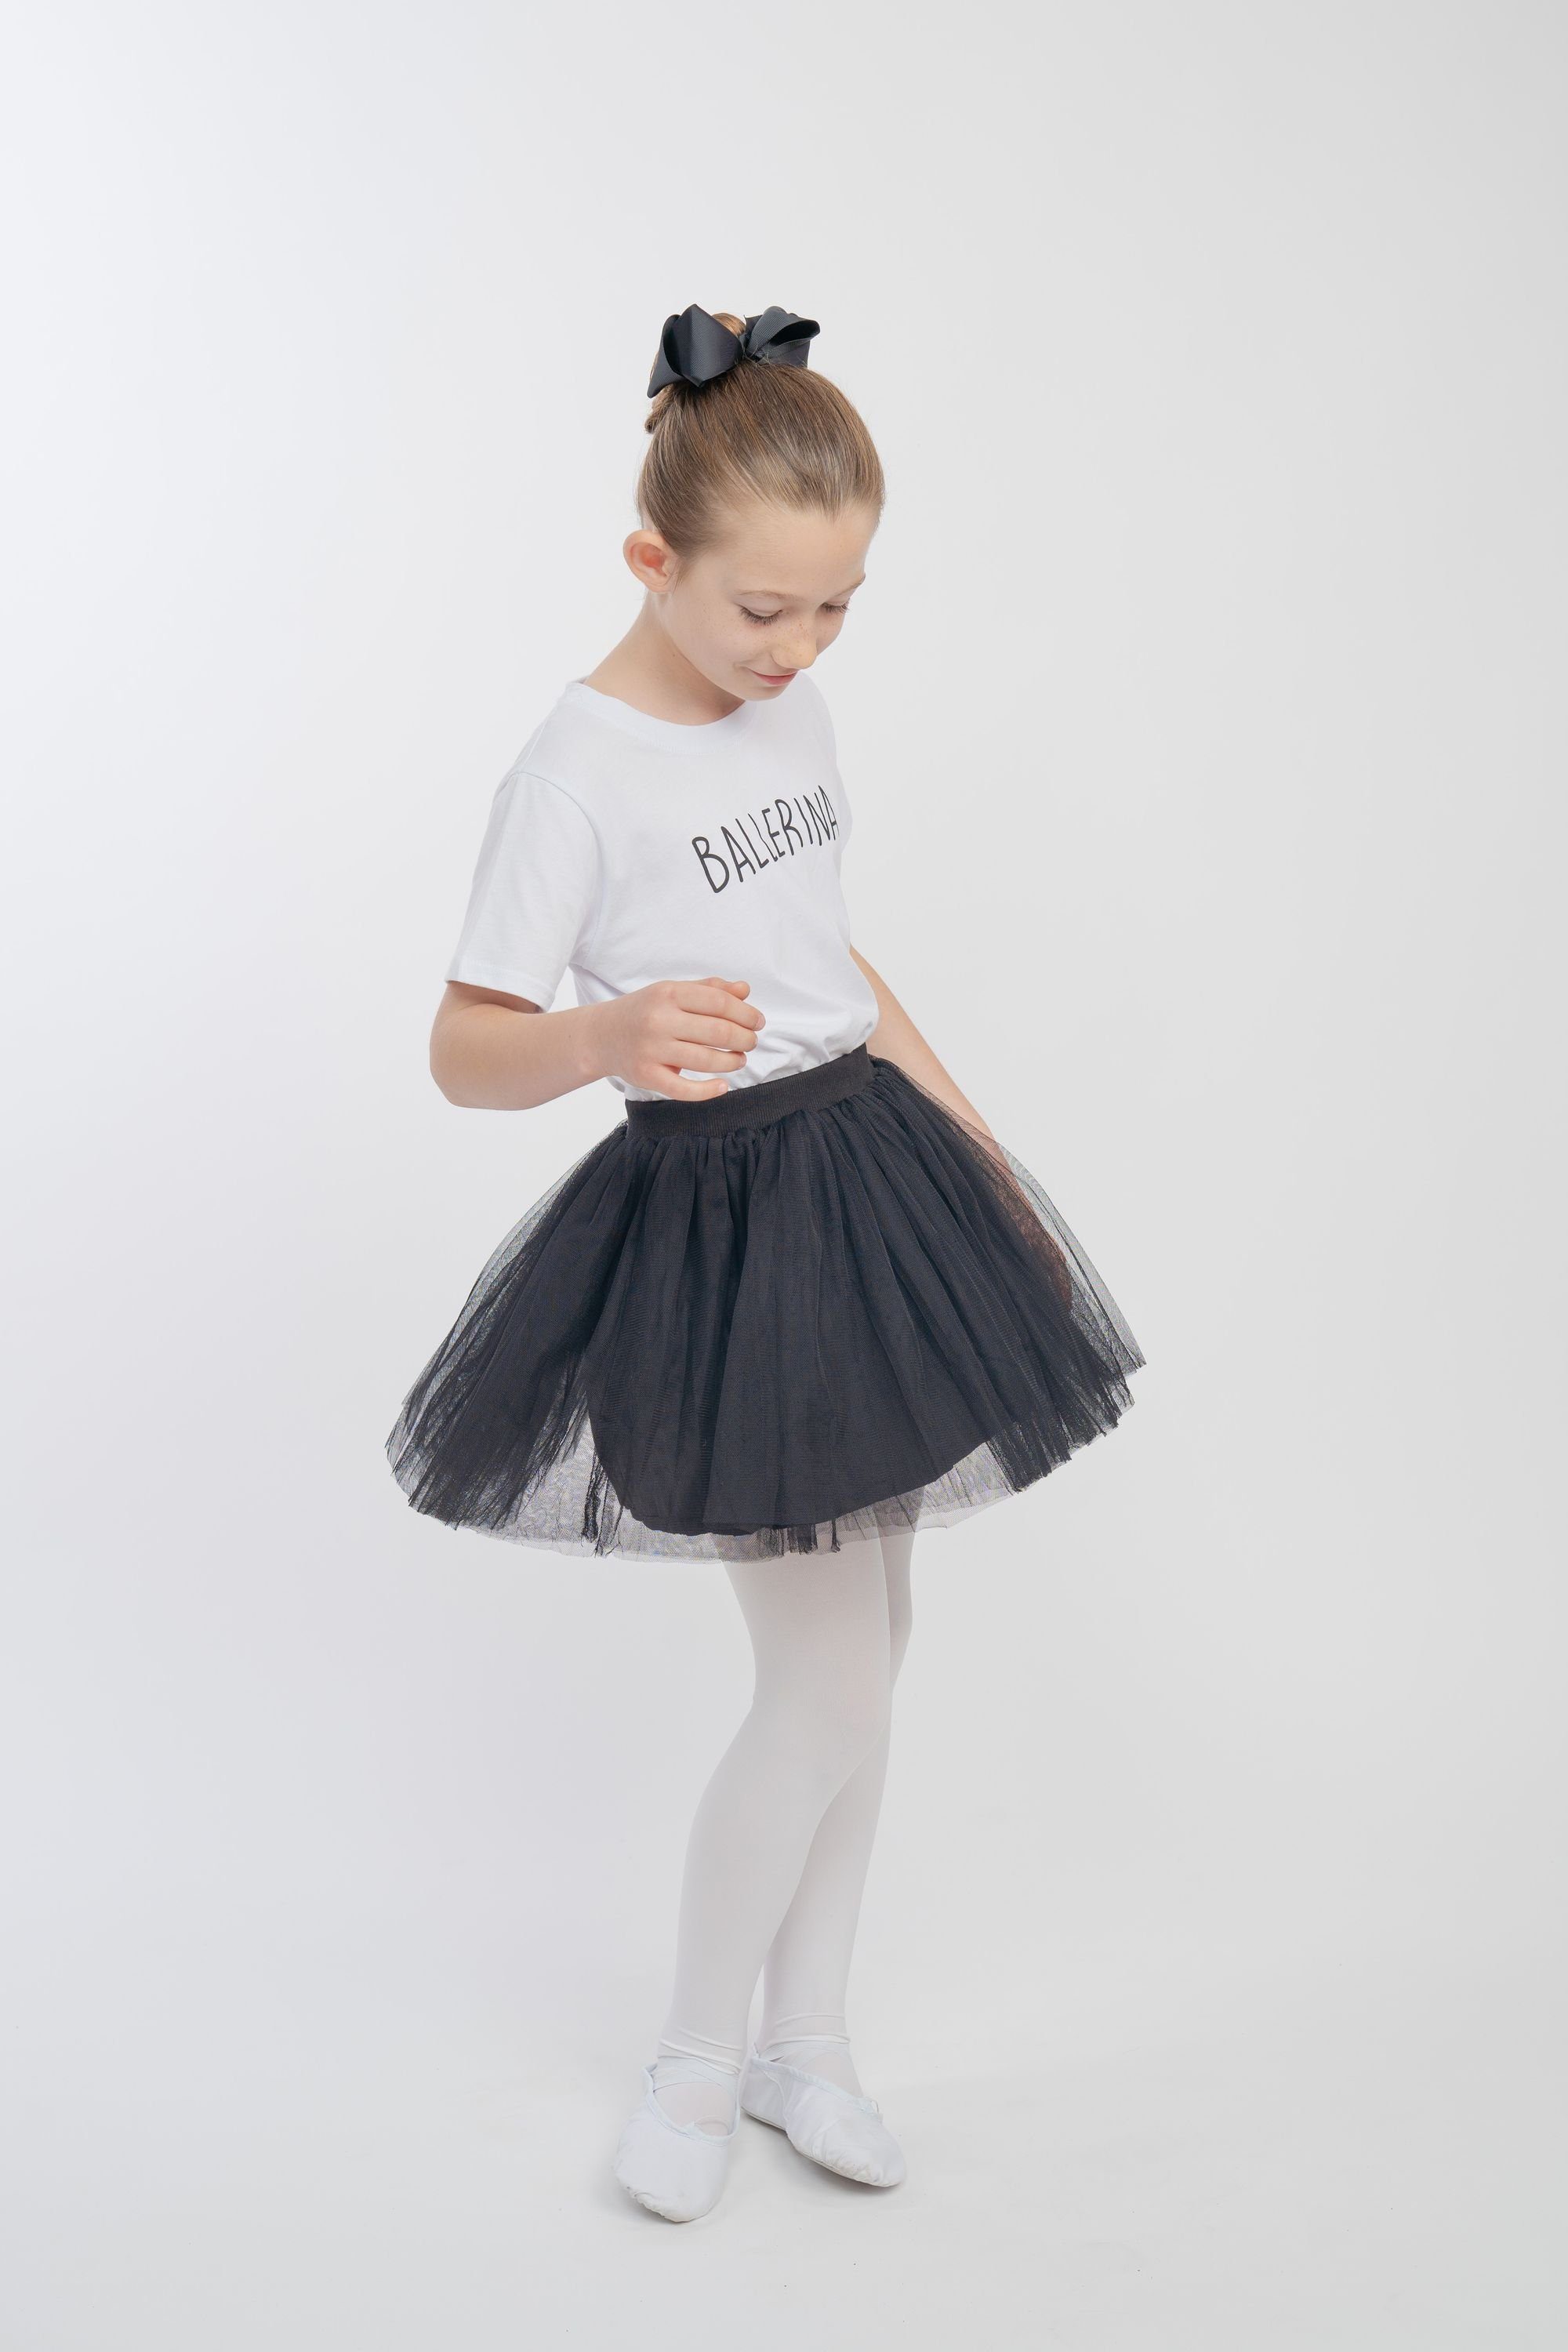 Tüllrock mit weichem schwarz weich Tüll aus besonders blickdichtem Ballerina Little tanzmuster Tüllrock Unterrock